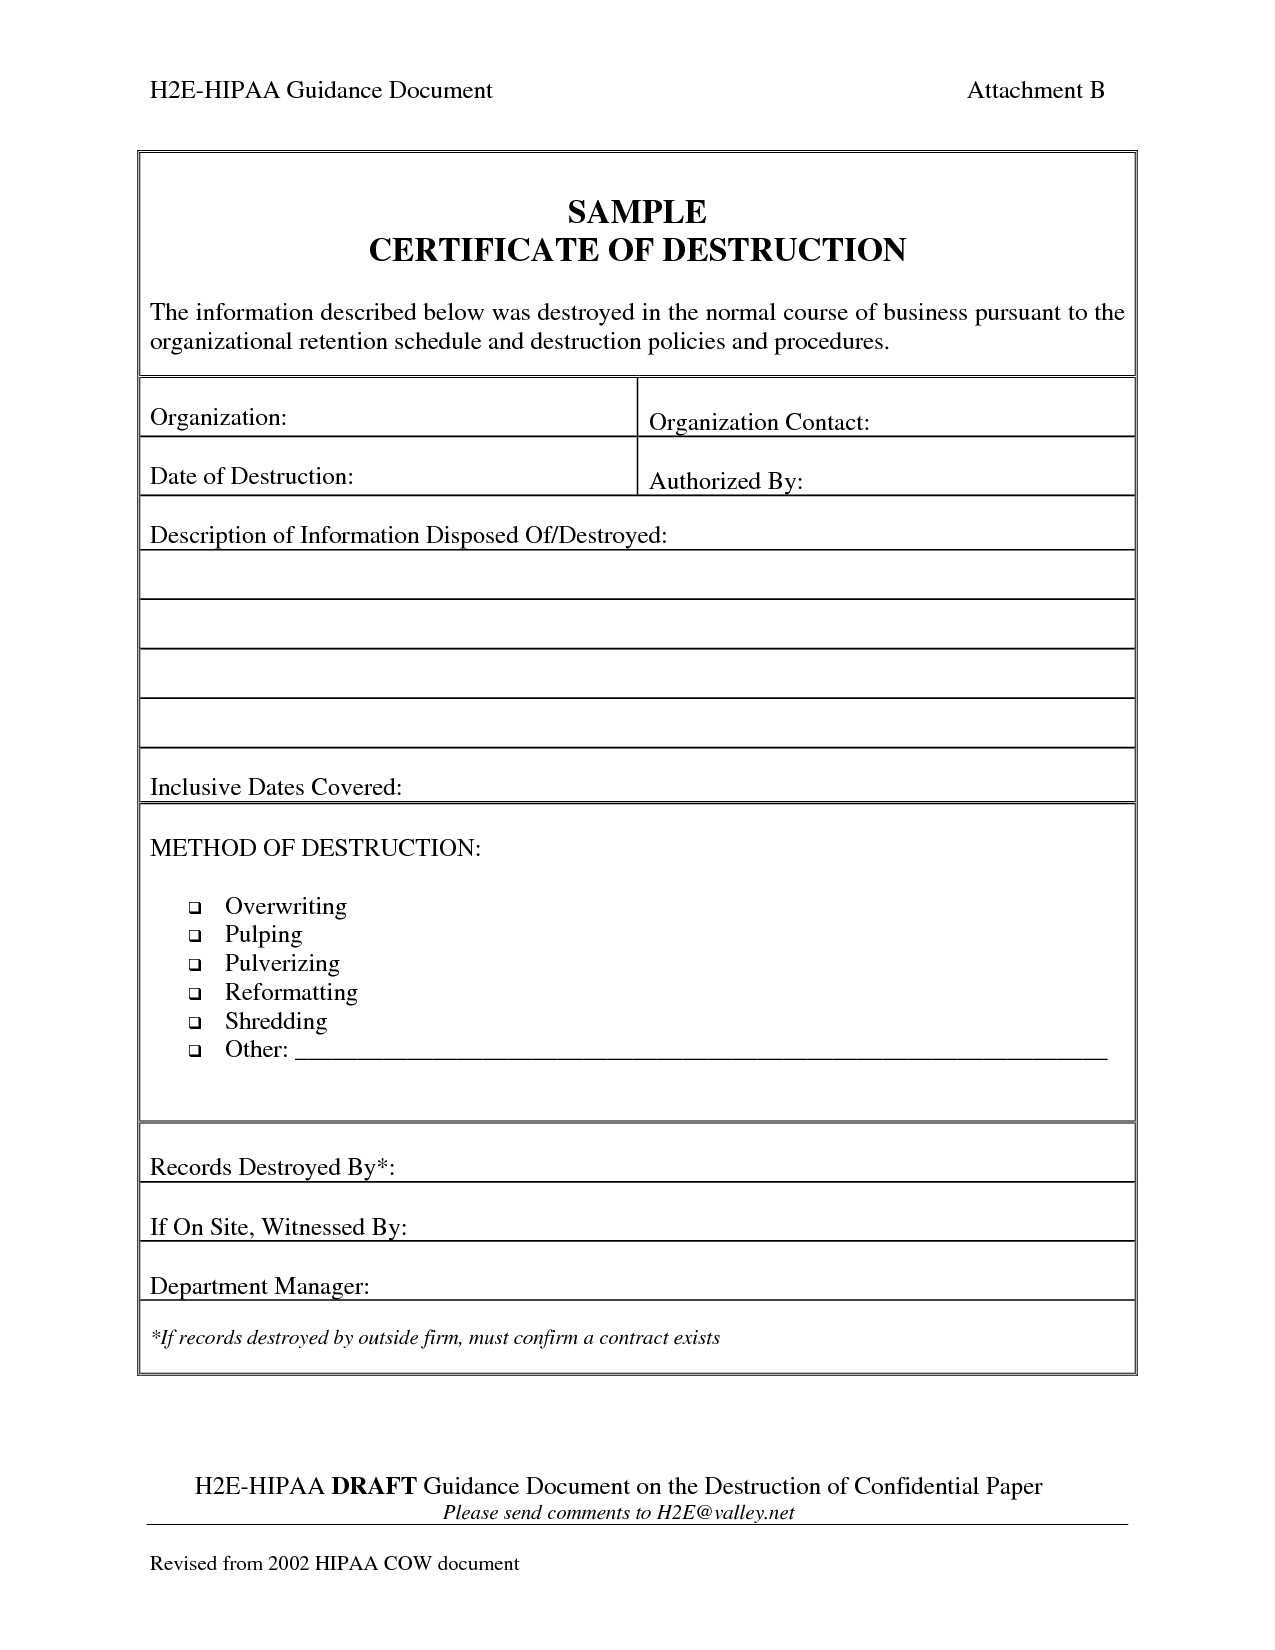 001 Template Ideas Certificate Of Destruction Frightening For Free Certificate Of Destruction Template